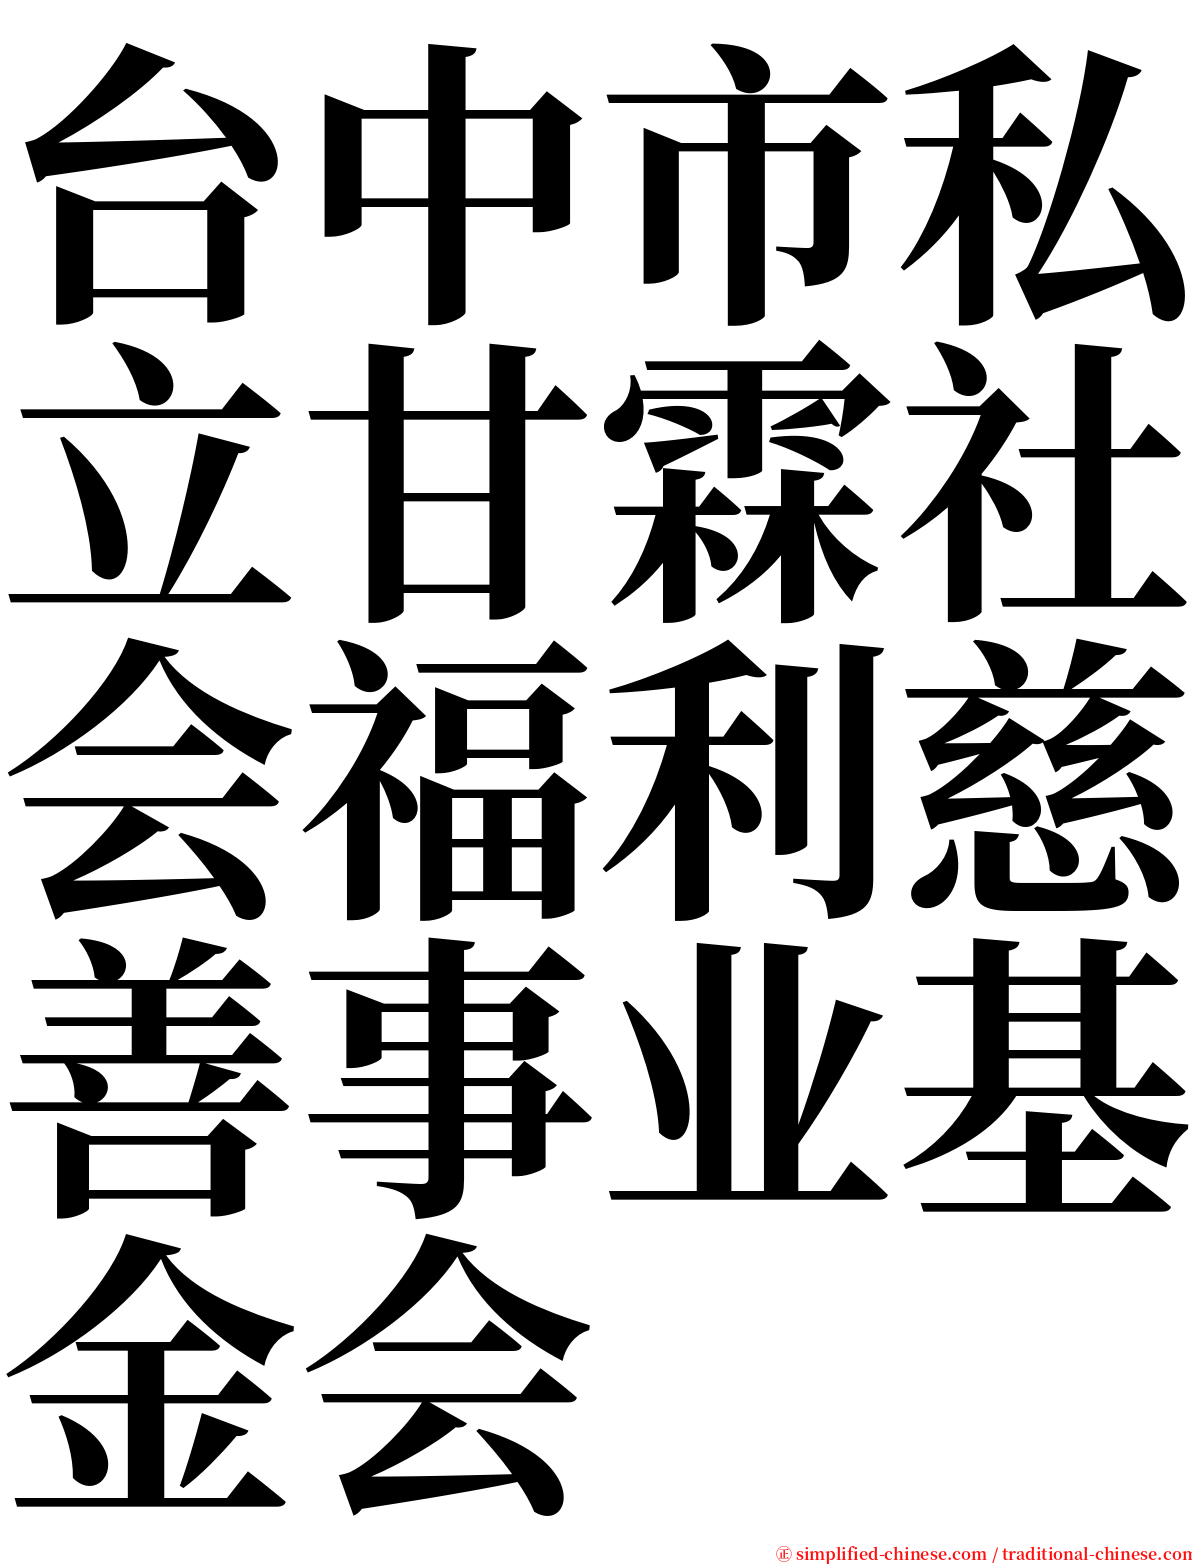 台中市私立甘霖社会福利慈善事业基金会 serif font